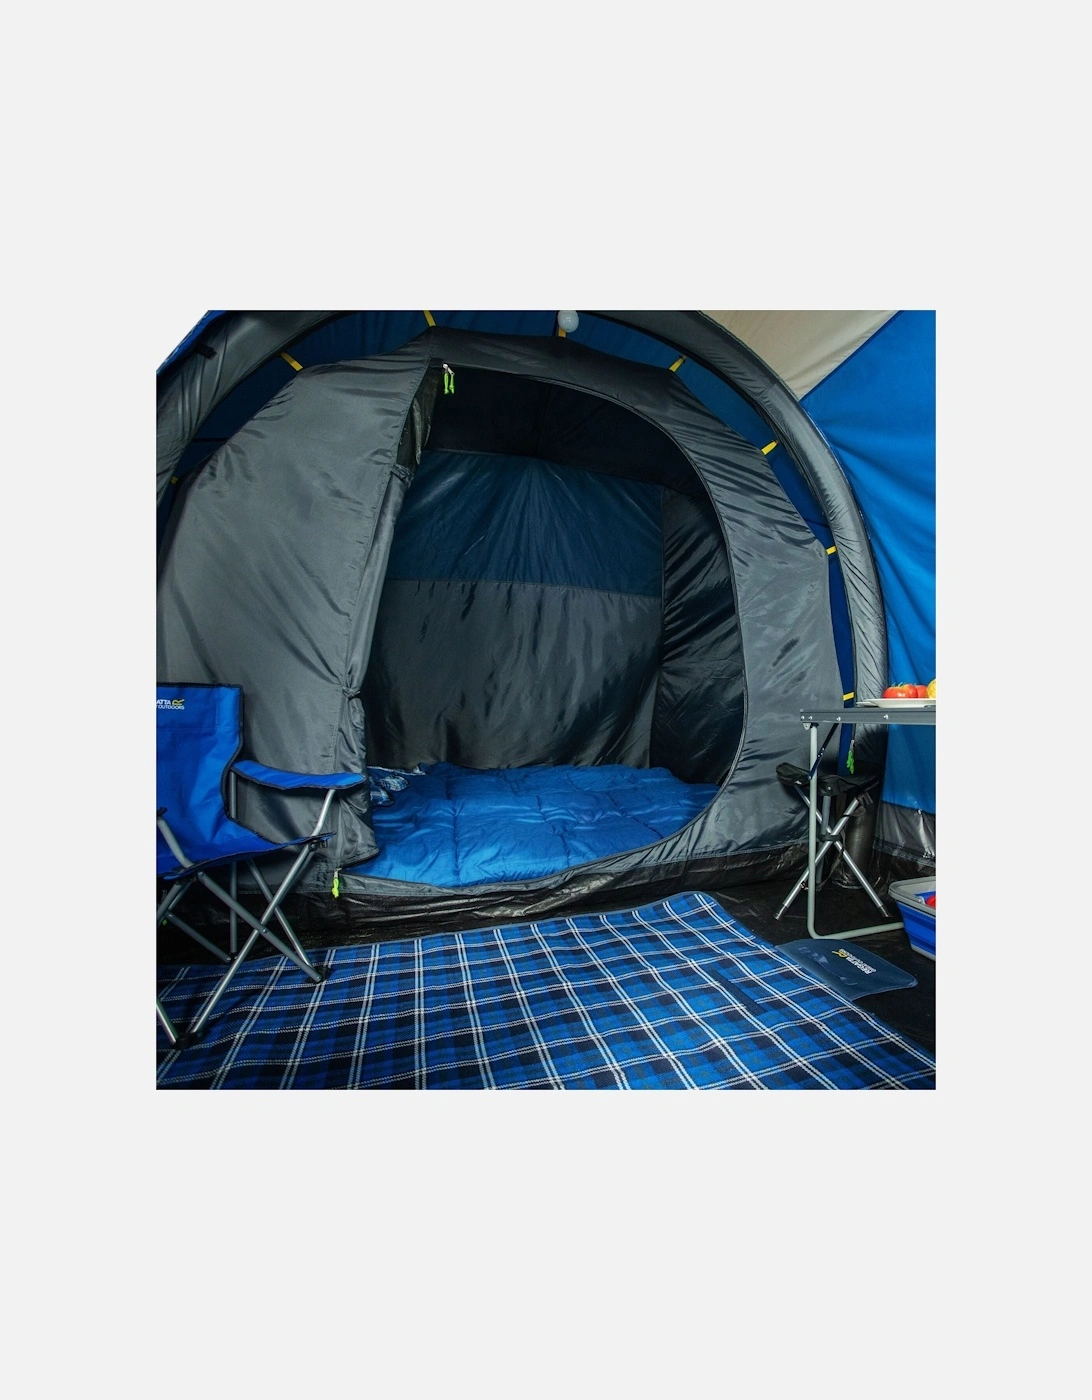 Kolima 3-Man Inflatable Family Tent - Laser/Ebony - One Size